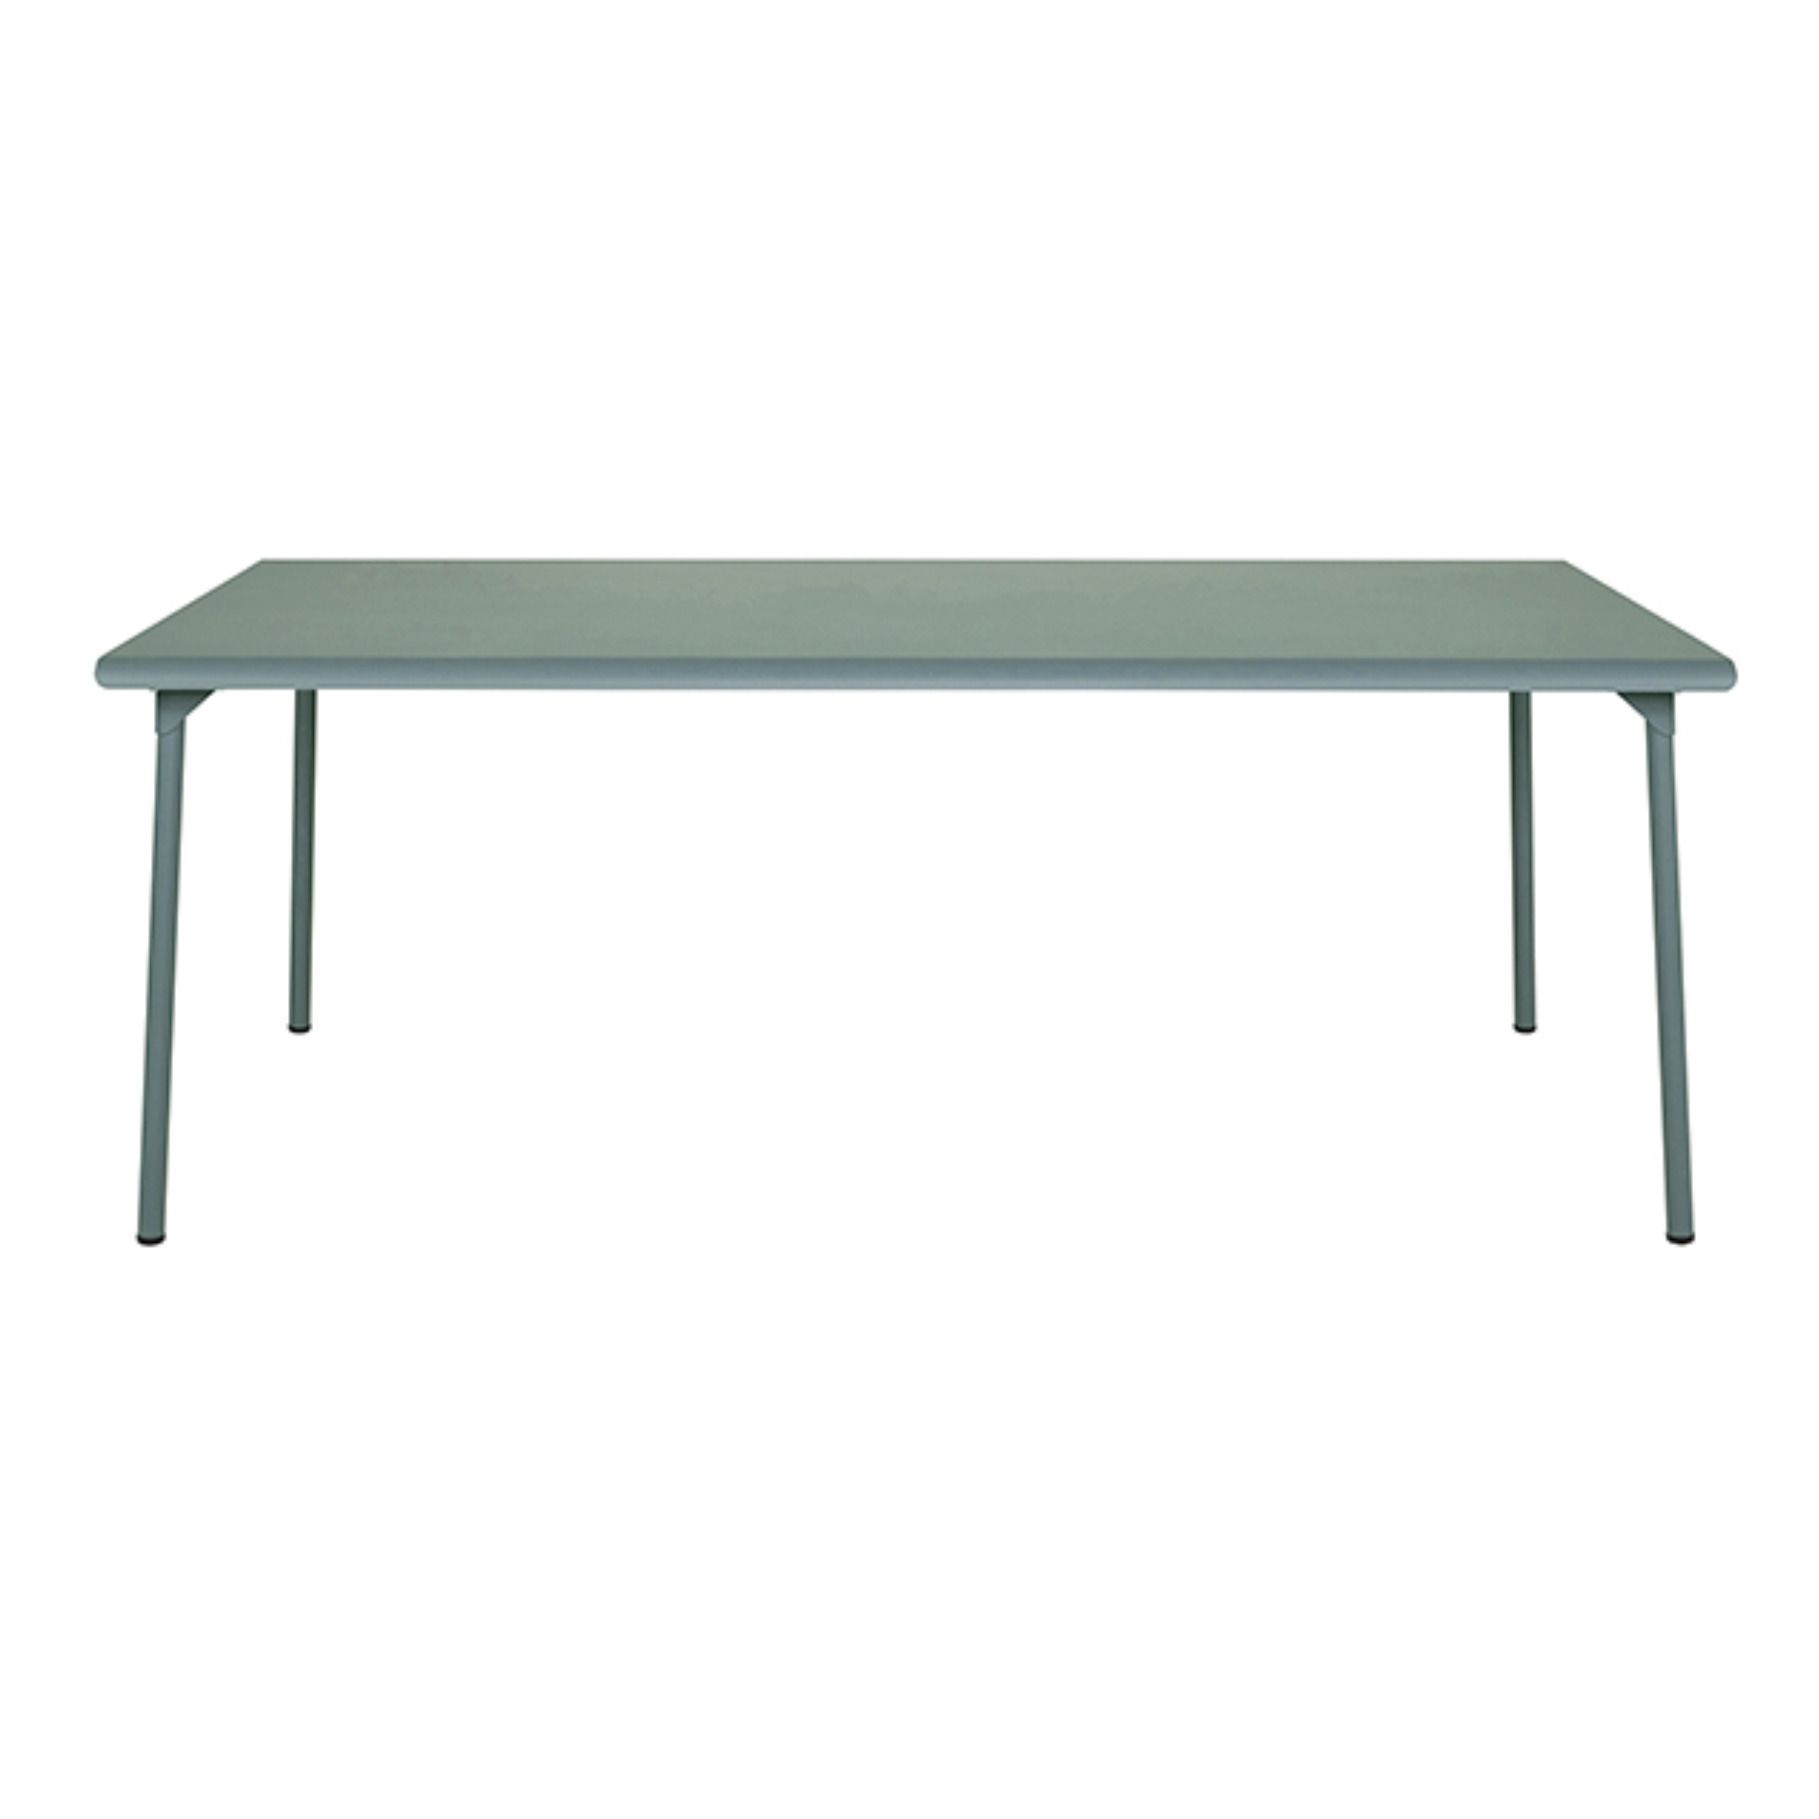 Tolix - Table outdoor Patio en inox - 240x100 cm - Vert Lichen